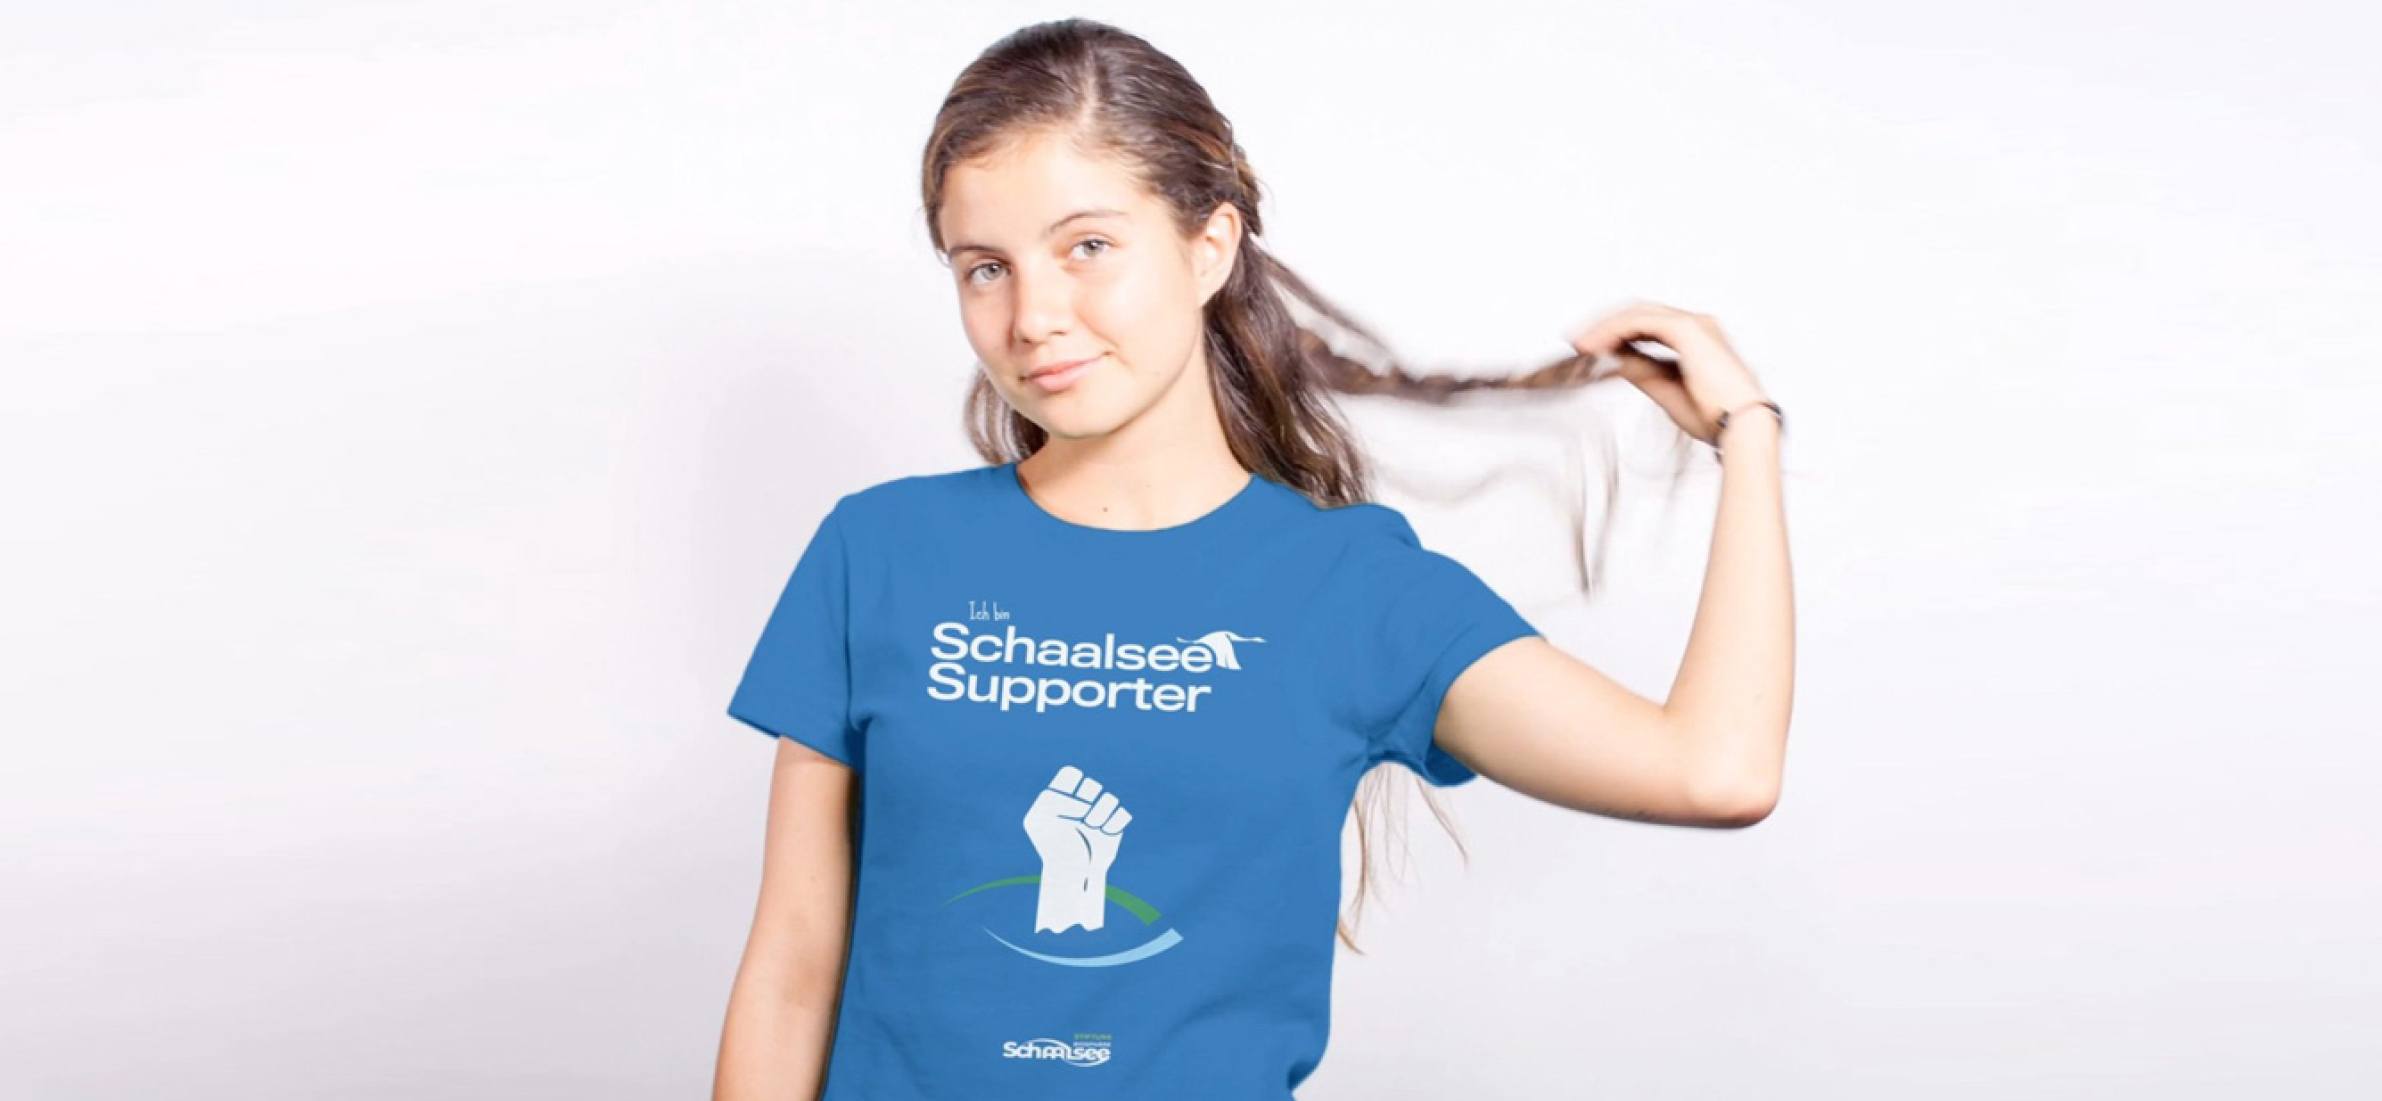 Junge Frau mit blauen T-Shirt. Mockup eines T-Shirts für das neue Corporate Design für die Stiftung Biosphäre Schaalsee von Daniel Roode. Branddesign